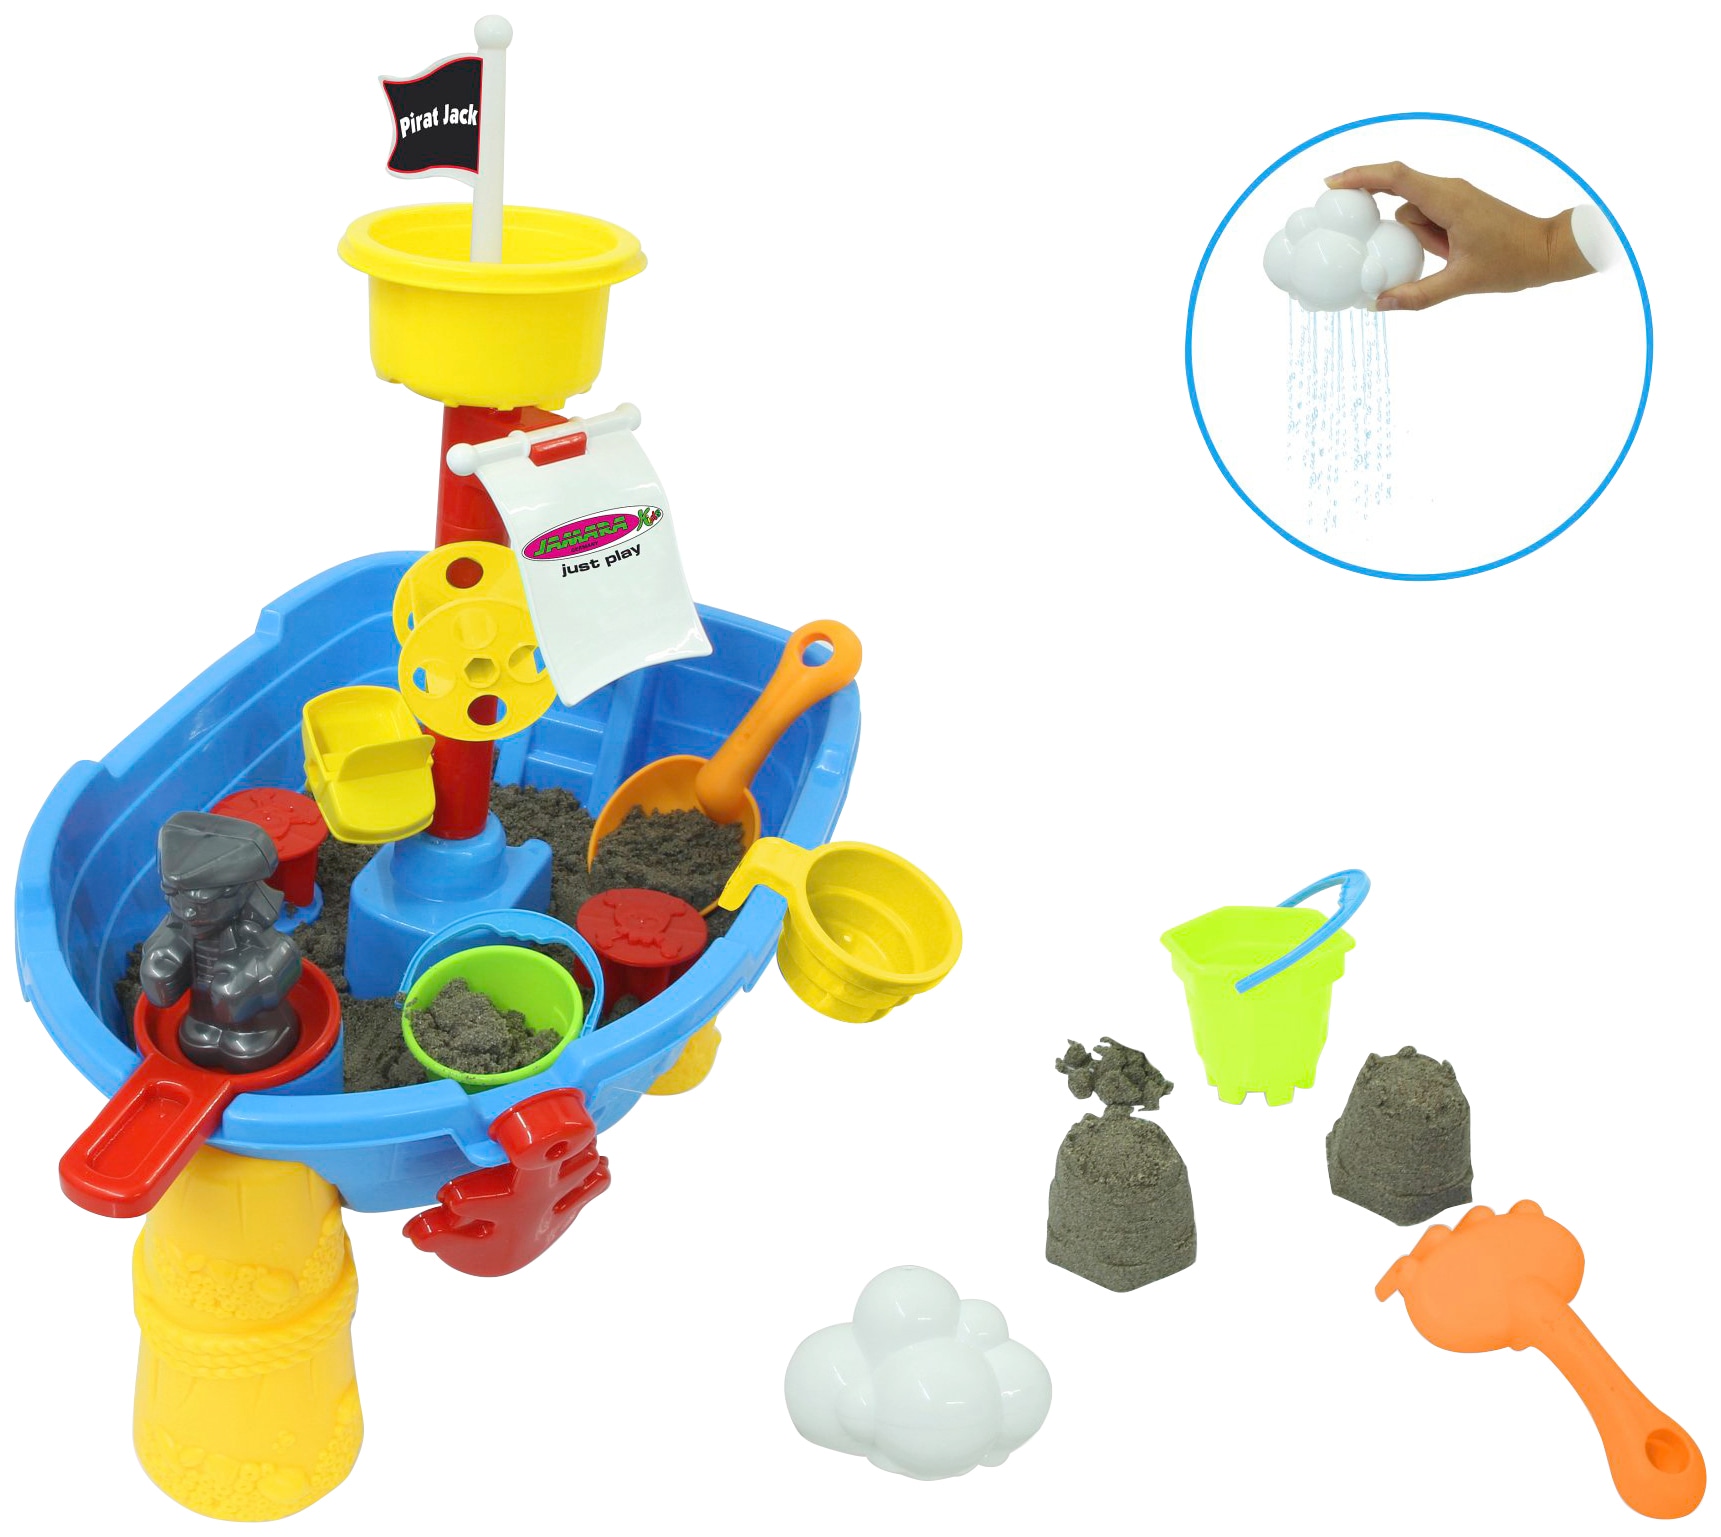 Wasserspieltisch »Pirat Jack«, für Kinder ab 2 Jahren, 21-teilig, BxLxH: 13x30x58 cm